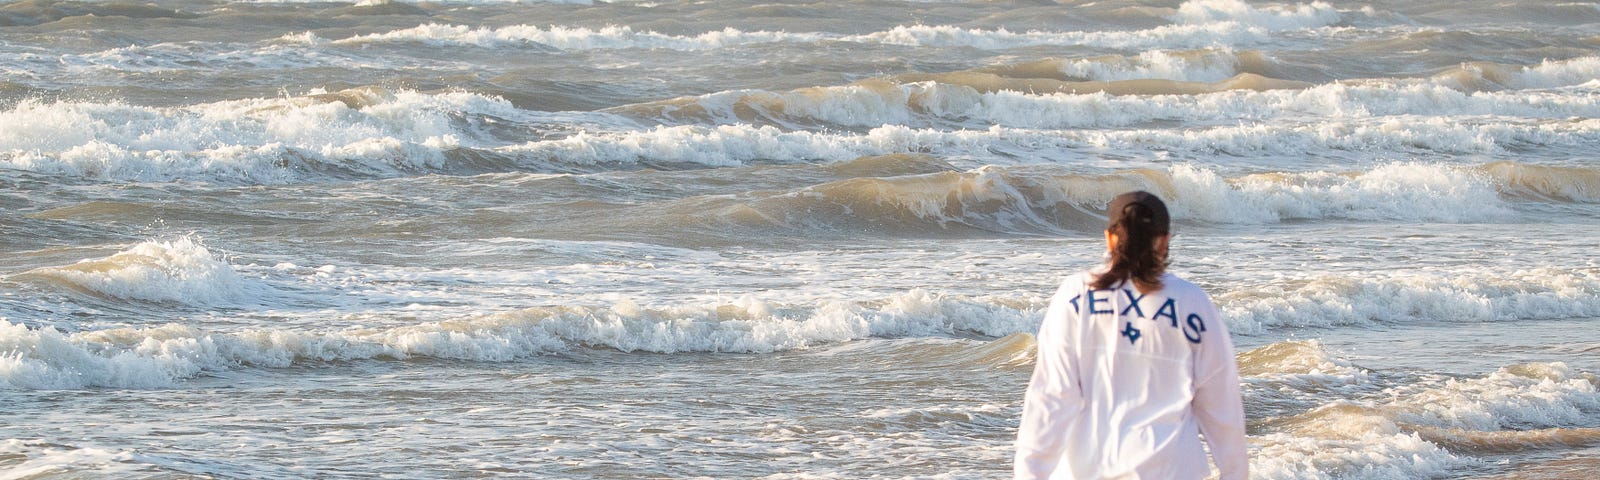 Walker on beach, watching waves on sea